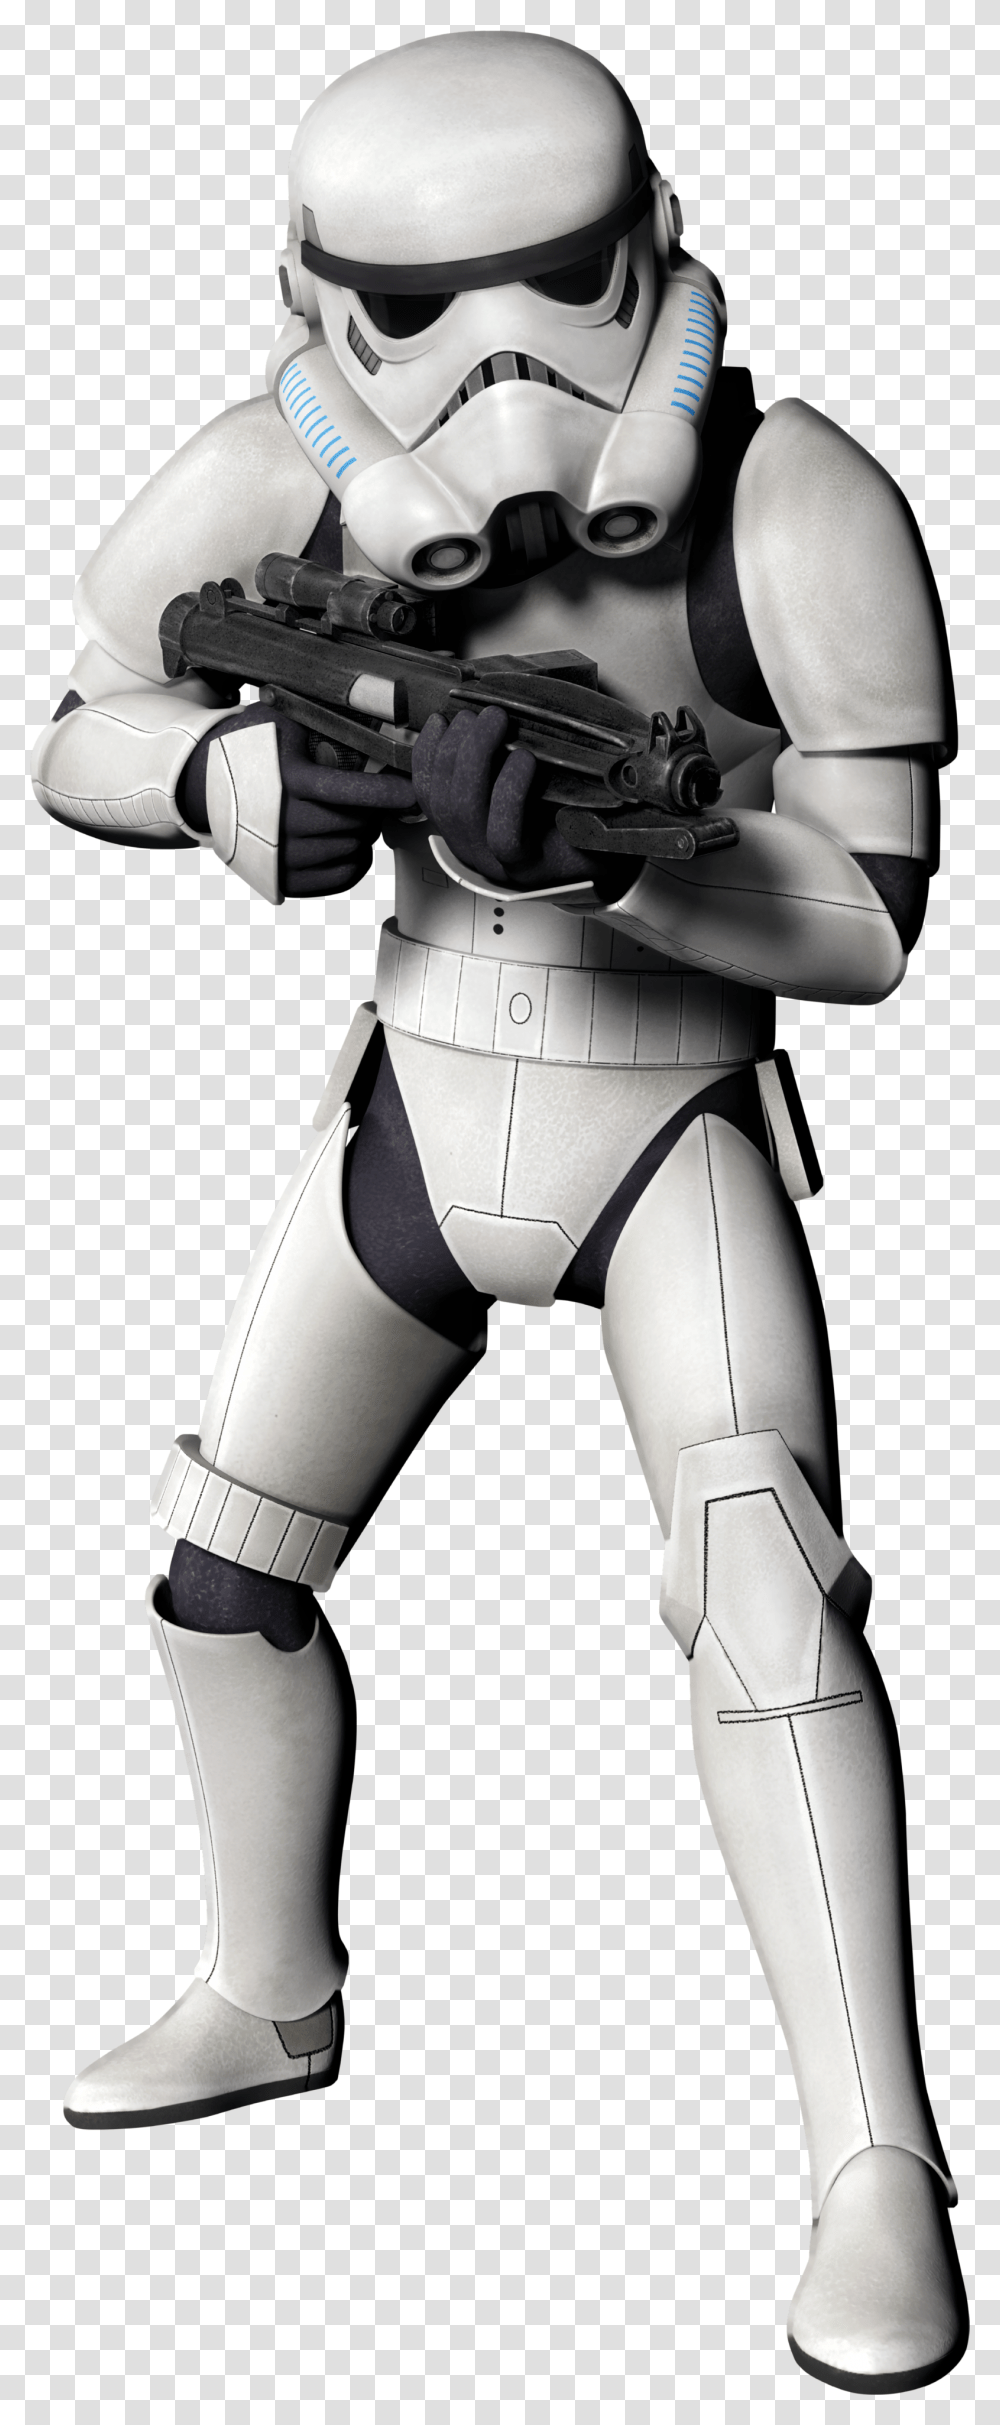 Download Toy Star Luke Football Skywalker Wars Hq Image Stormtrooper Background, Helmet, Clothing, Apparel, Robot Transparent Png